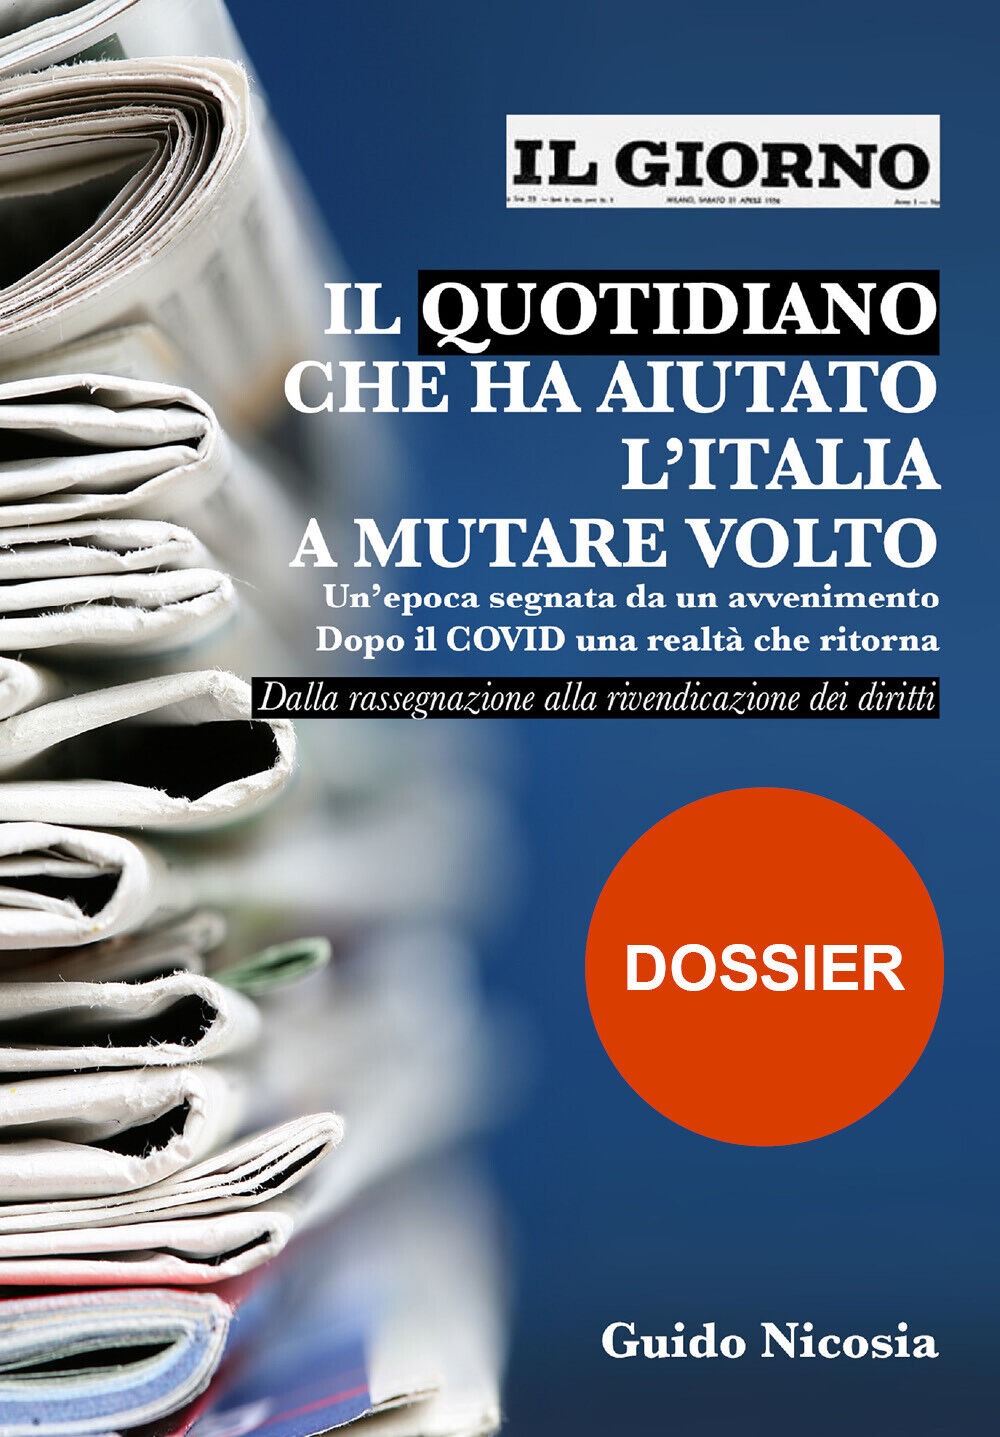 Il Giorno - Il quotidiano che ha aiutato L'Italia a mutare volto di Guido Nicosi